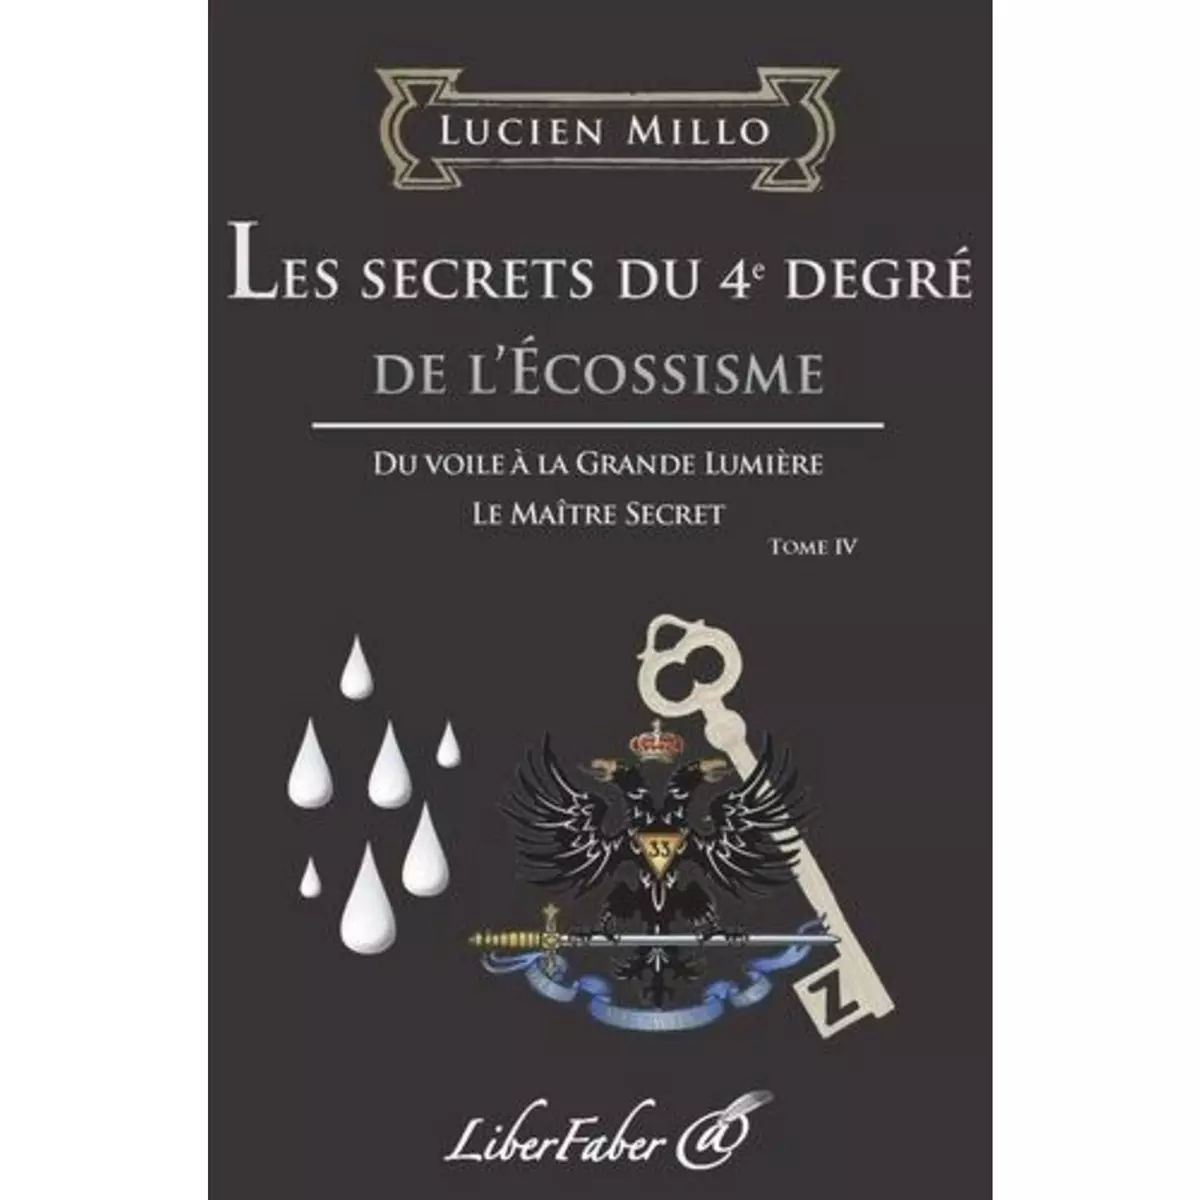  LES SECRETS DU 4E DEGRE DE L'ECOSSISME, Millo Lucien